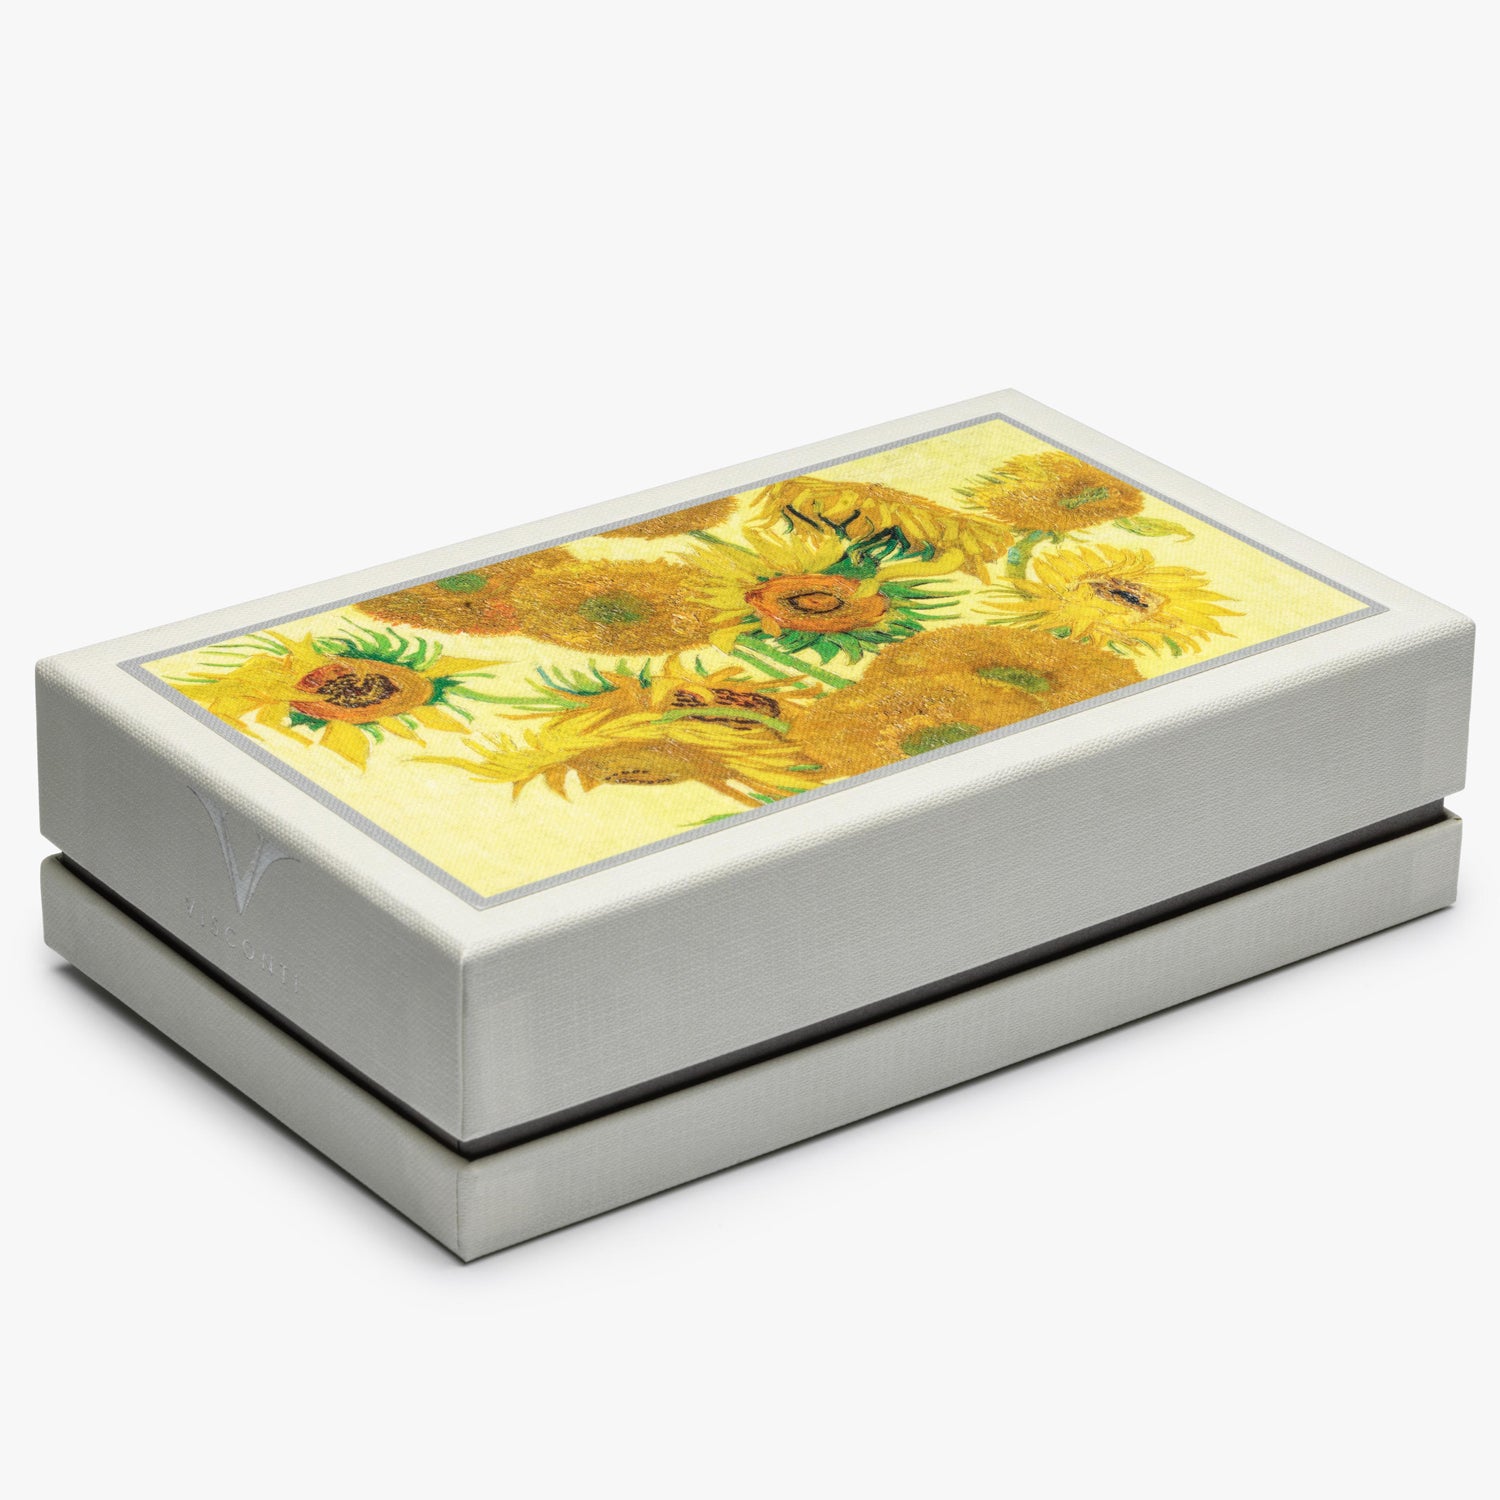 Visconti Van Gogh "Sunflowers" Ballpoint Pen